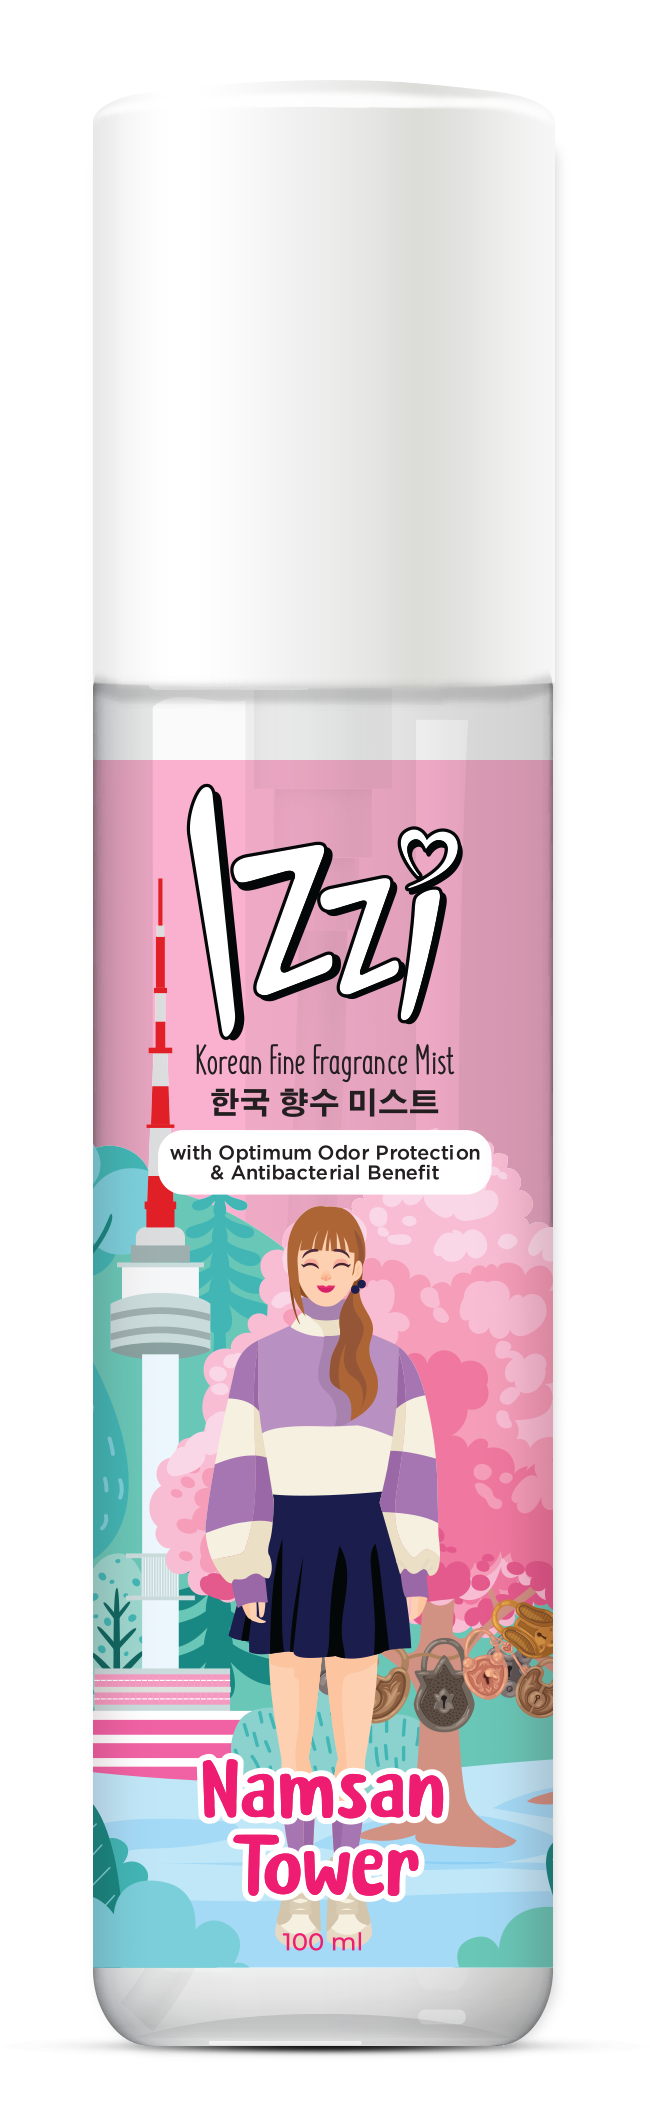 Korean Fine Fragrance Mist Namsan Tower